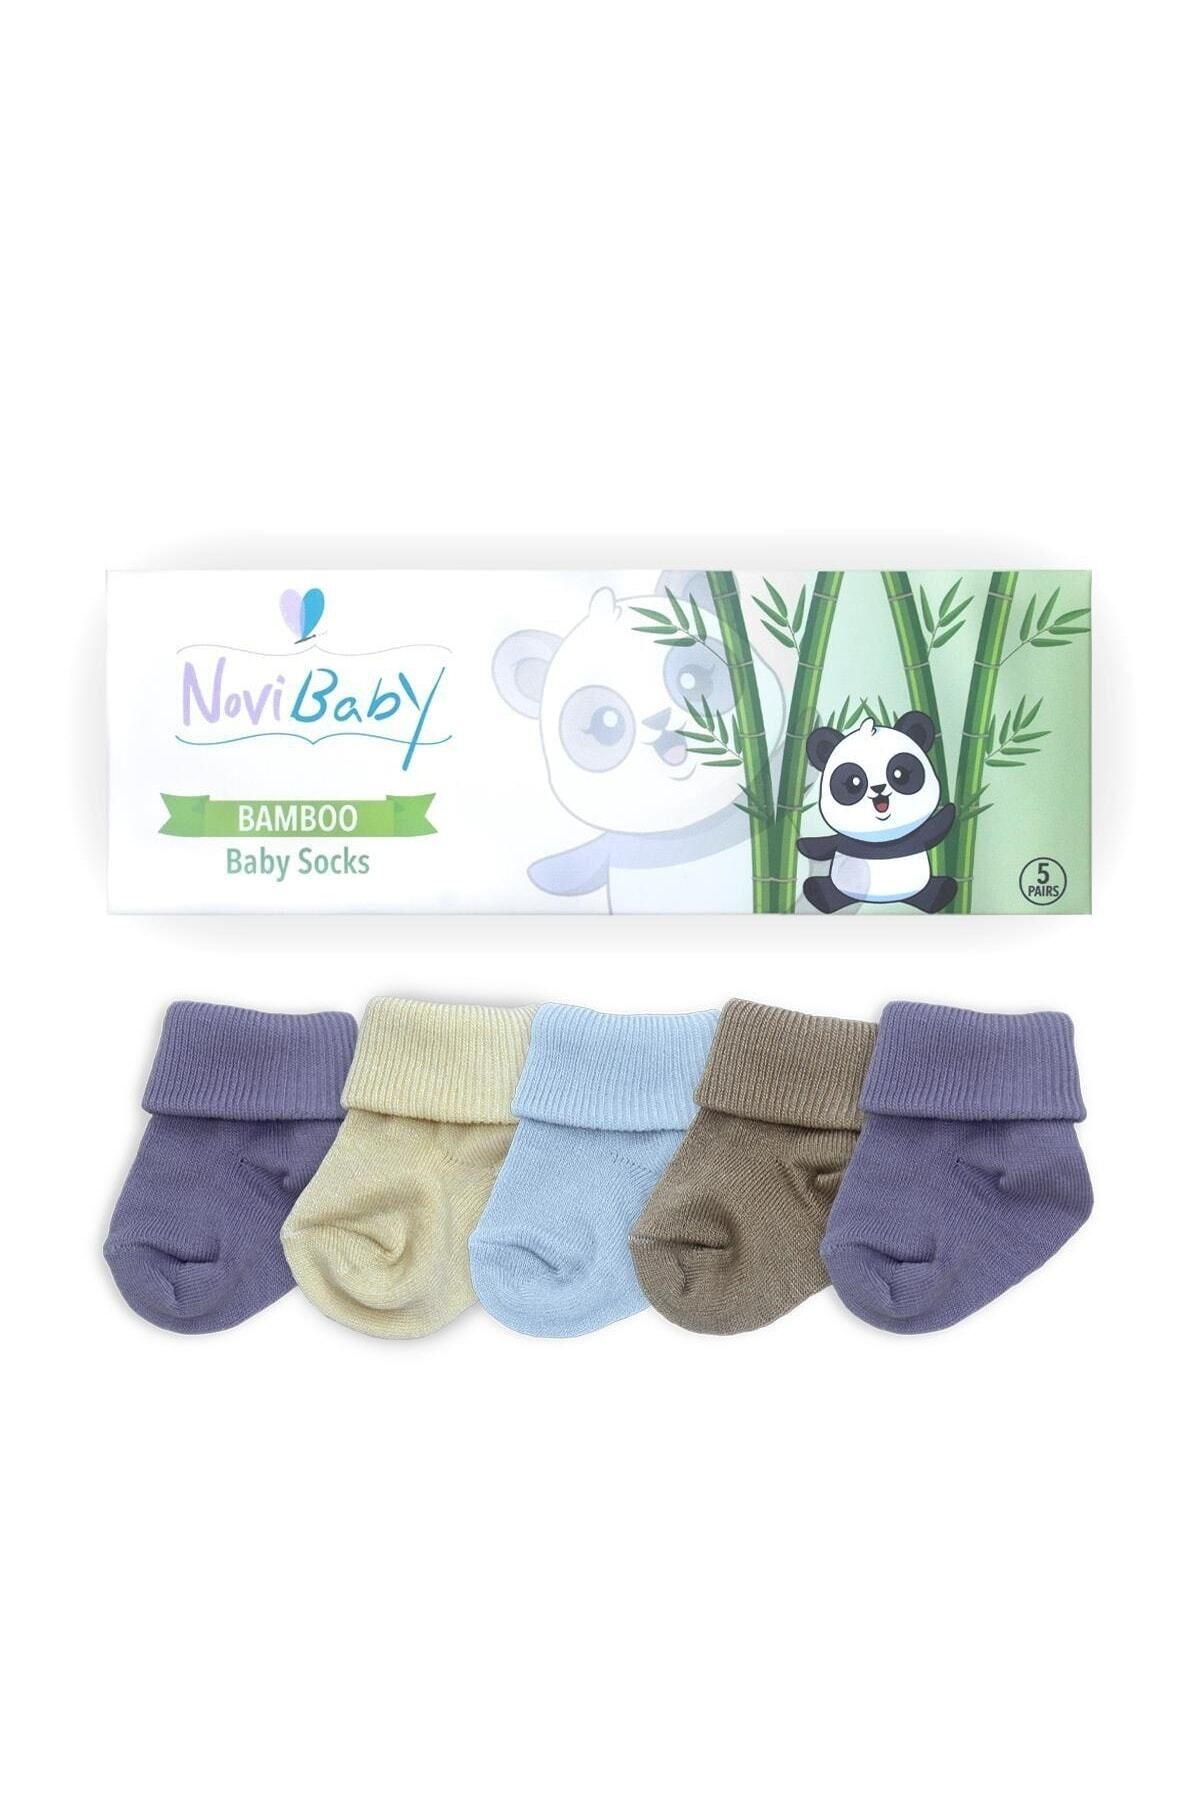 Novibaby 5'li Bambu Yenidoğan Bebek Çorap I Baby Boy I Kız Erkek Bebek Çorabı